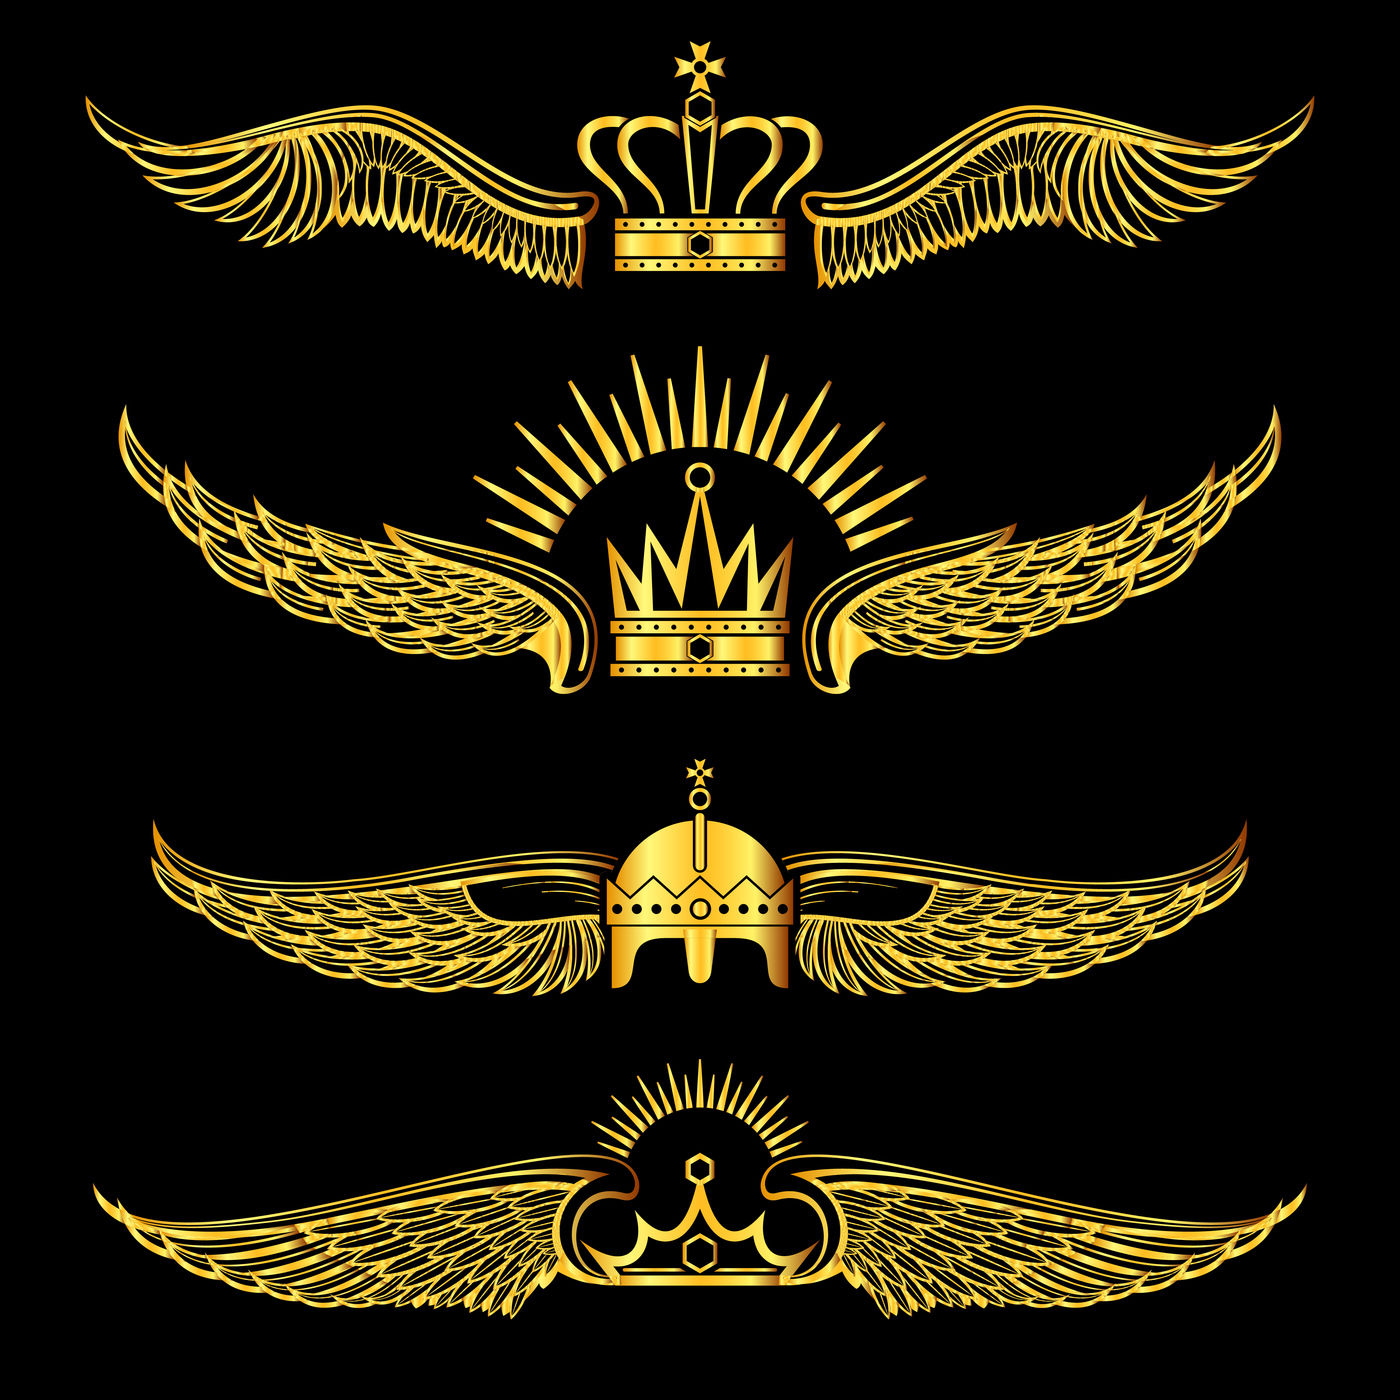 Bộ logo vương miện cánh vàng trên nền đen sẽ mang đến cho bạn cảm giác thăng hoa. Được thiết kế với chi tiết tinh xảo, cánh hoa và vương miện được kết hợp hoàn hảo trên nền đen. Logo này không chỉ đơn thuần là biểu tượng, mà còn là sự thể hiện của sự sang trọng và phong cách.